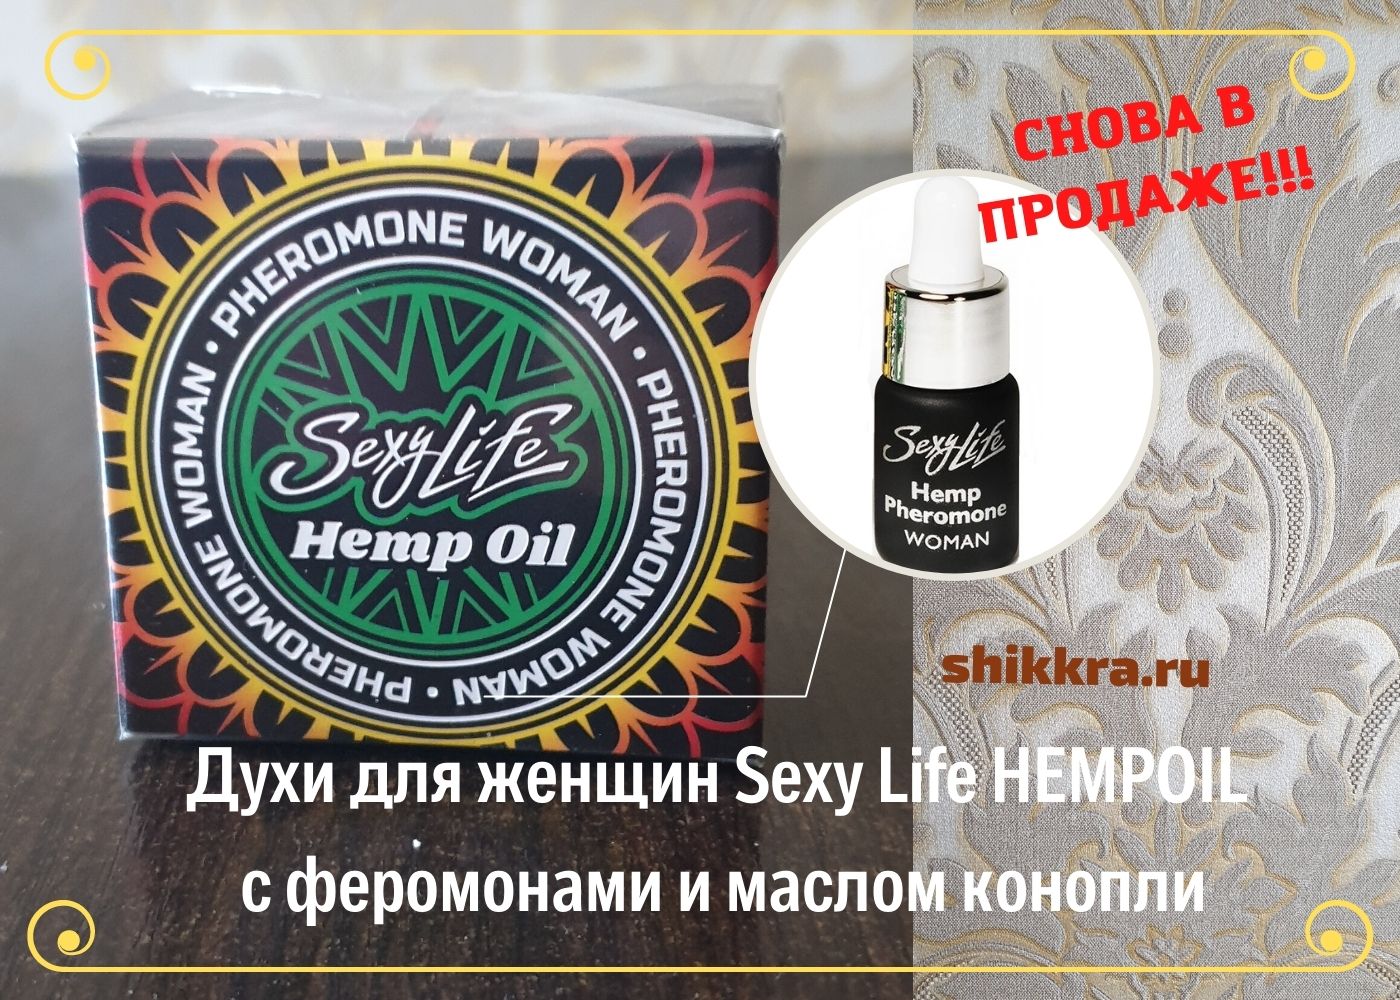 Духи для женщин  Sexy Life HEMPOIL с коноплей в ИМ shikkra.ru